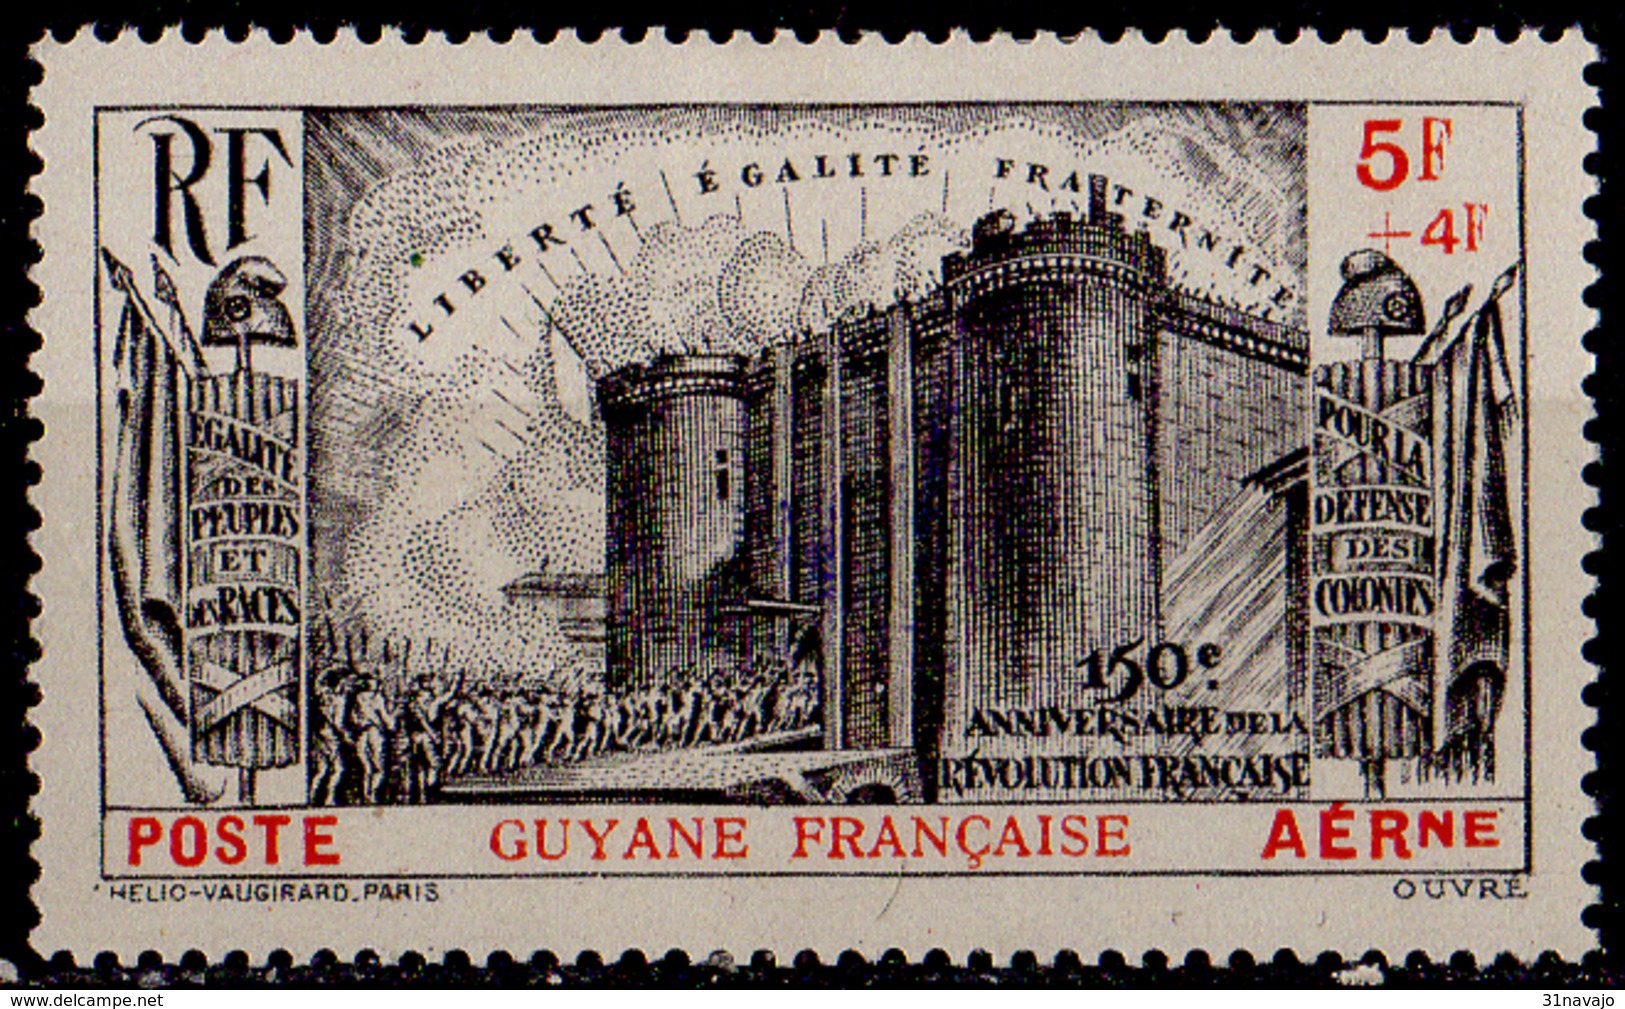 GUYANE FRANCAISE - 150e Anniversaire De La Révolution Française Poste Aérienne - Neufs